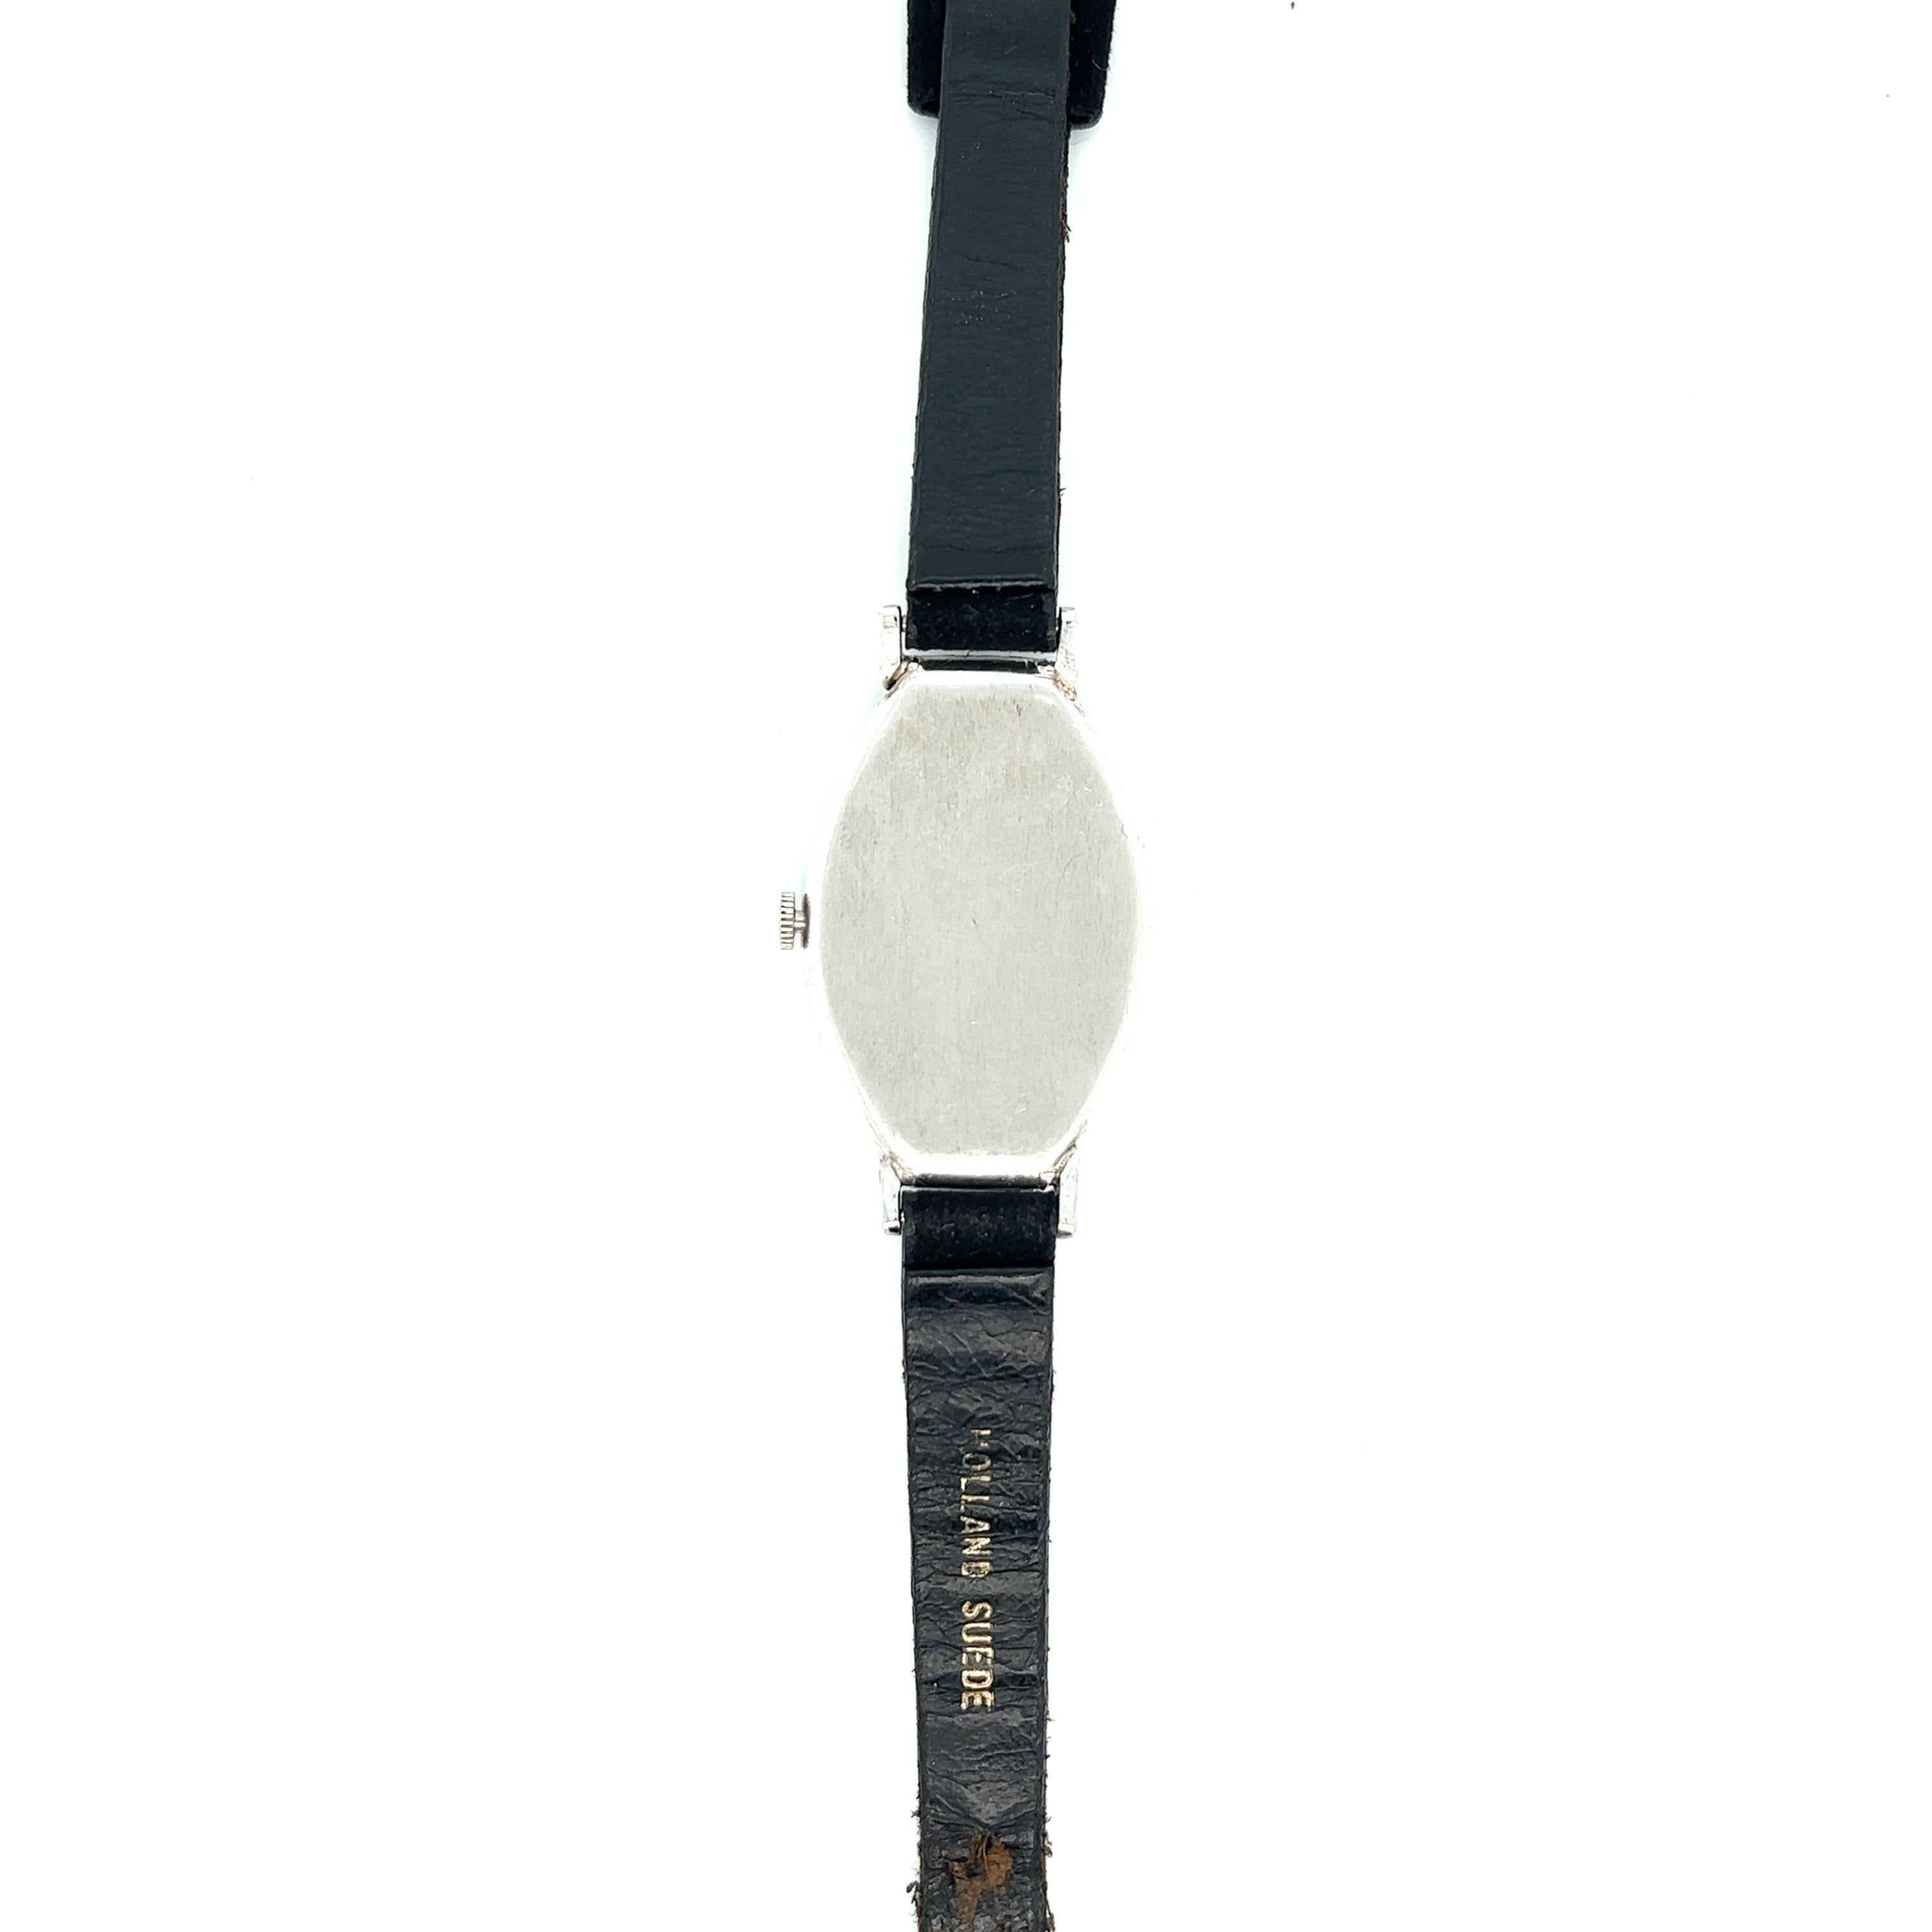 Dreicer & Co. Art Deco Damenuhr

Onyx mit französischem Schliff und schwarzem Email, rundes Zifferblatt in einem Tonneau-Gehäuse, Diamanten im Einzelschliff von ca. 0,62 Karat, schwarzes Velourslederarmband; hochwertiges Uhrwerk signiert Haas, 17